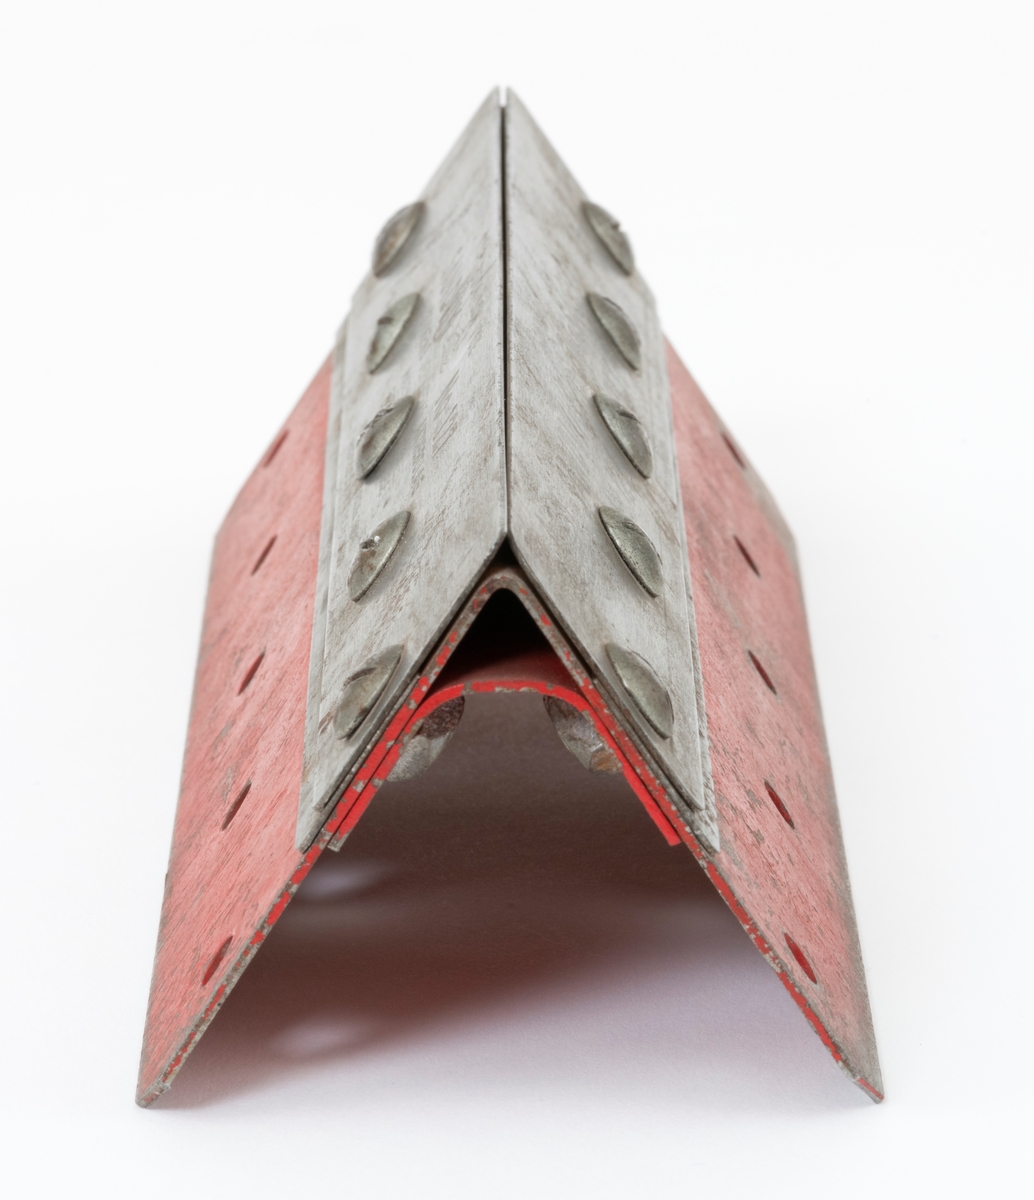 Klemme, filklemme, av typen Sandvik 127 for sagblad (buesagblad, bogesagblad) til buesager (bogesager). For å ha begge hender frie under filing av sagbladet festes det i en holder (klemme). Filklemma er konstruert av stålplater.  En rød rektangulær stålplate er bøyd (knekt) slik at en får to sider. Sett fra kortendene gir det filklemma en trekantete form. I den røde stålpata er det 5 hull på hver side. (Her kan det f. eks. slås inn spiker for å feste klemma til en stubbe i skogen når en vedlikeholder bladet.) Under den bøyde plata, er det påskrudd en ståplate som avstiver konstruksjonen. Utenpå klemma er det, på begge sider, festet to grå rektangulære stålplater. Hver enkelt plate er skrudd fast med 5 sporskruer. Disse skruene holder også fast den avstivende plata på undersiden. Ved å løsne litt på skruene, tre bladet mellom de grå ståplatene og deretter stramme til igjen, festes sagbladet som skal files.